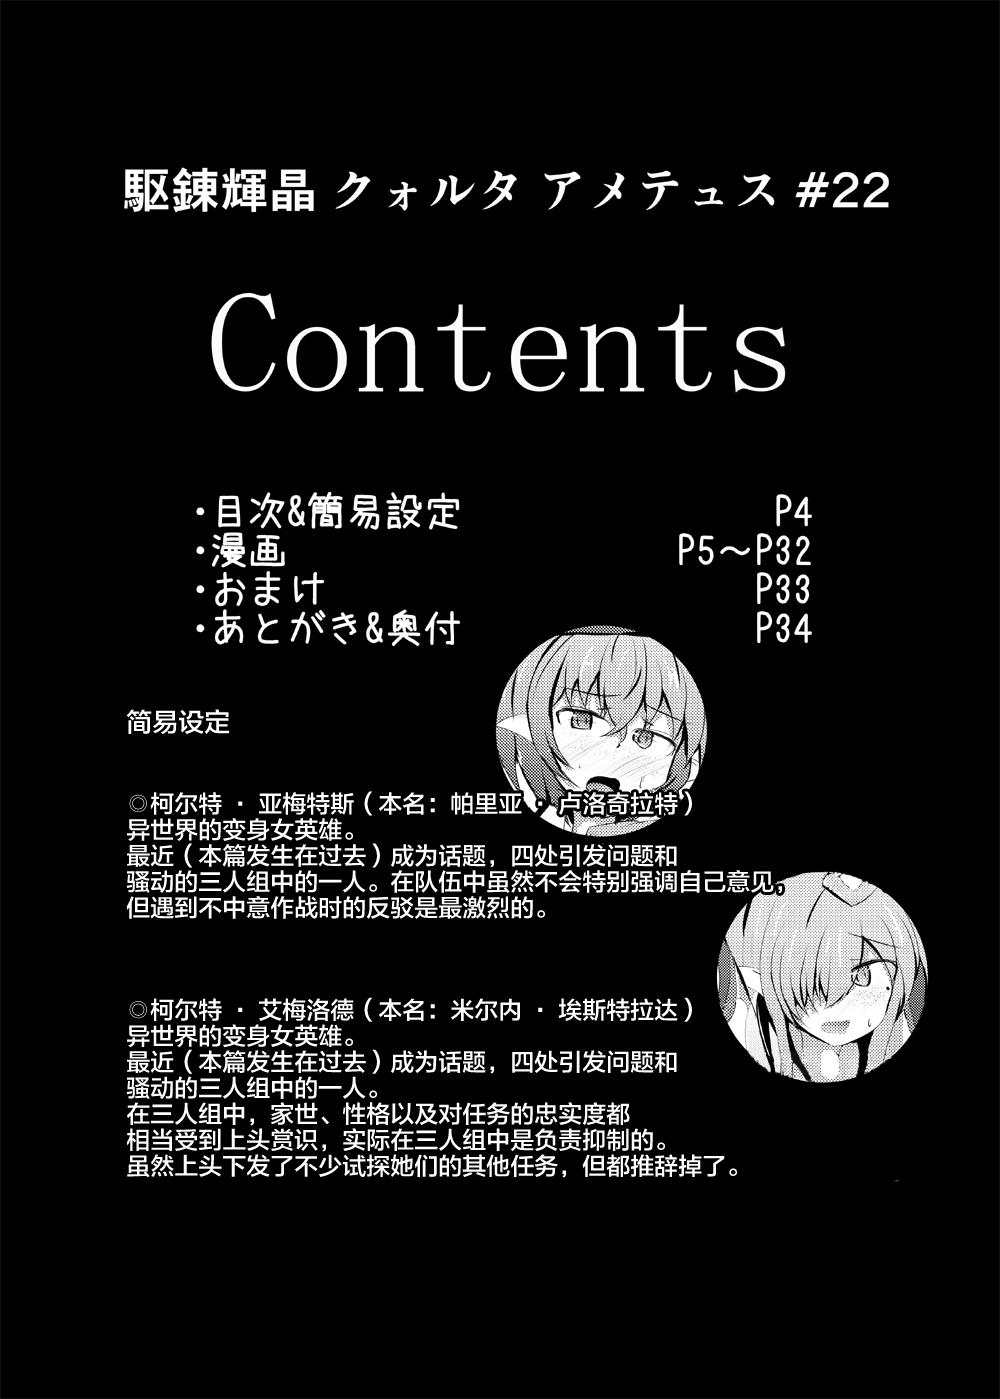 Retro Karen Kishou Quarta Ametus #22 - Original Cdzinha - Page 4